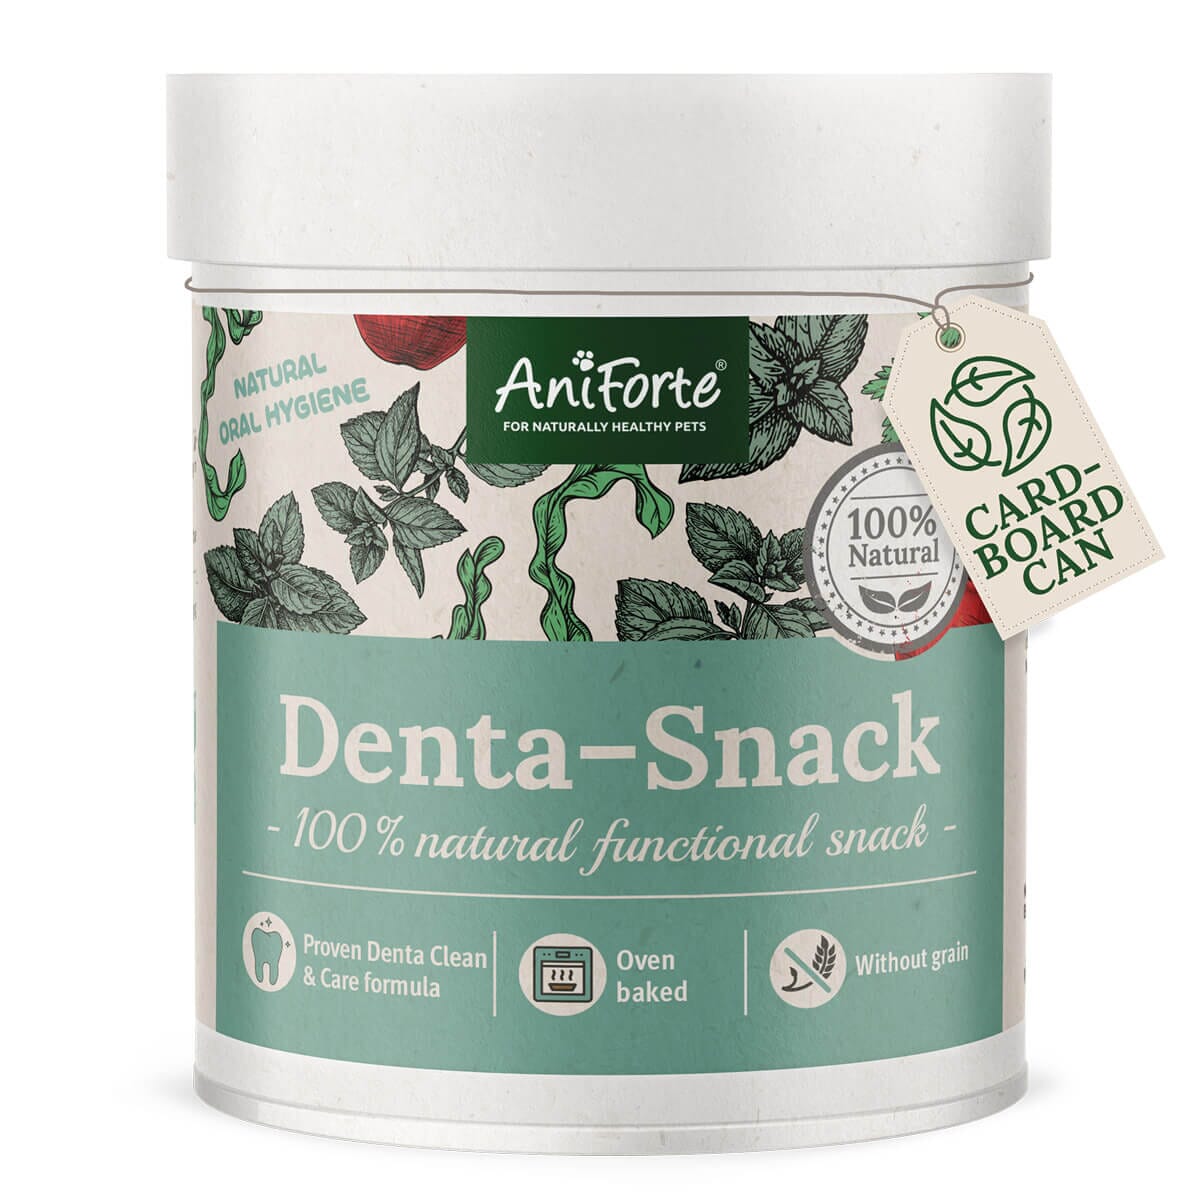 Denta-Snack - AniForte UK